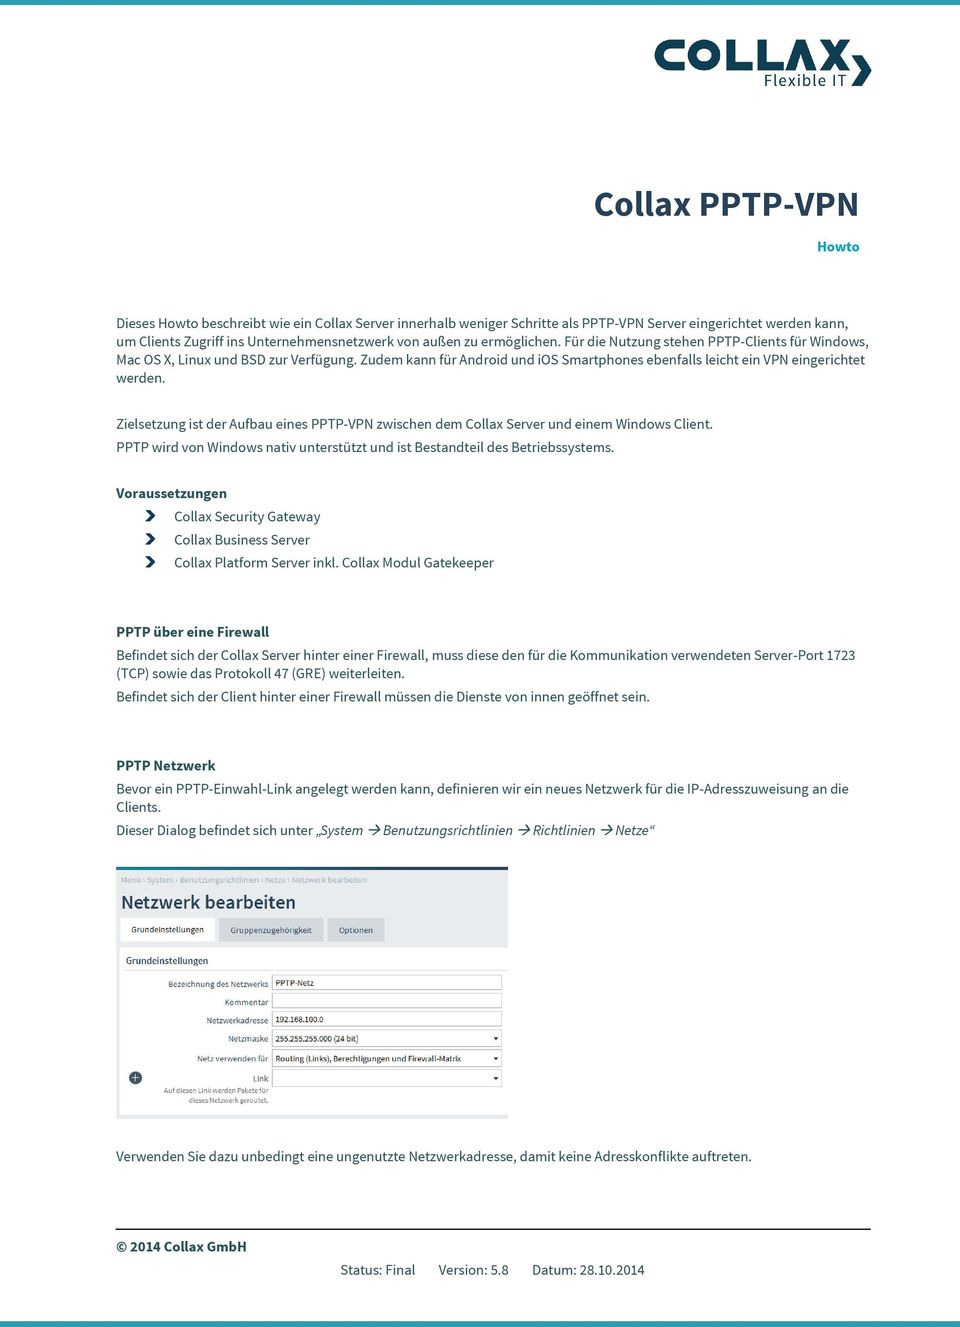 Zielsetzung ist der Aufbau eines PPTP-VPN zwischen dem Collax Server und einem Windows Client. PPTP wird von Windows nativ unterstützt und ist Bestandteil des Betriebssystems.